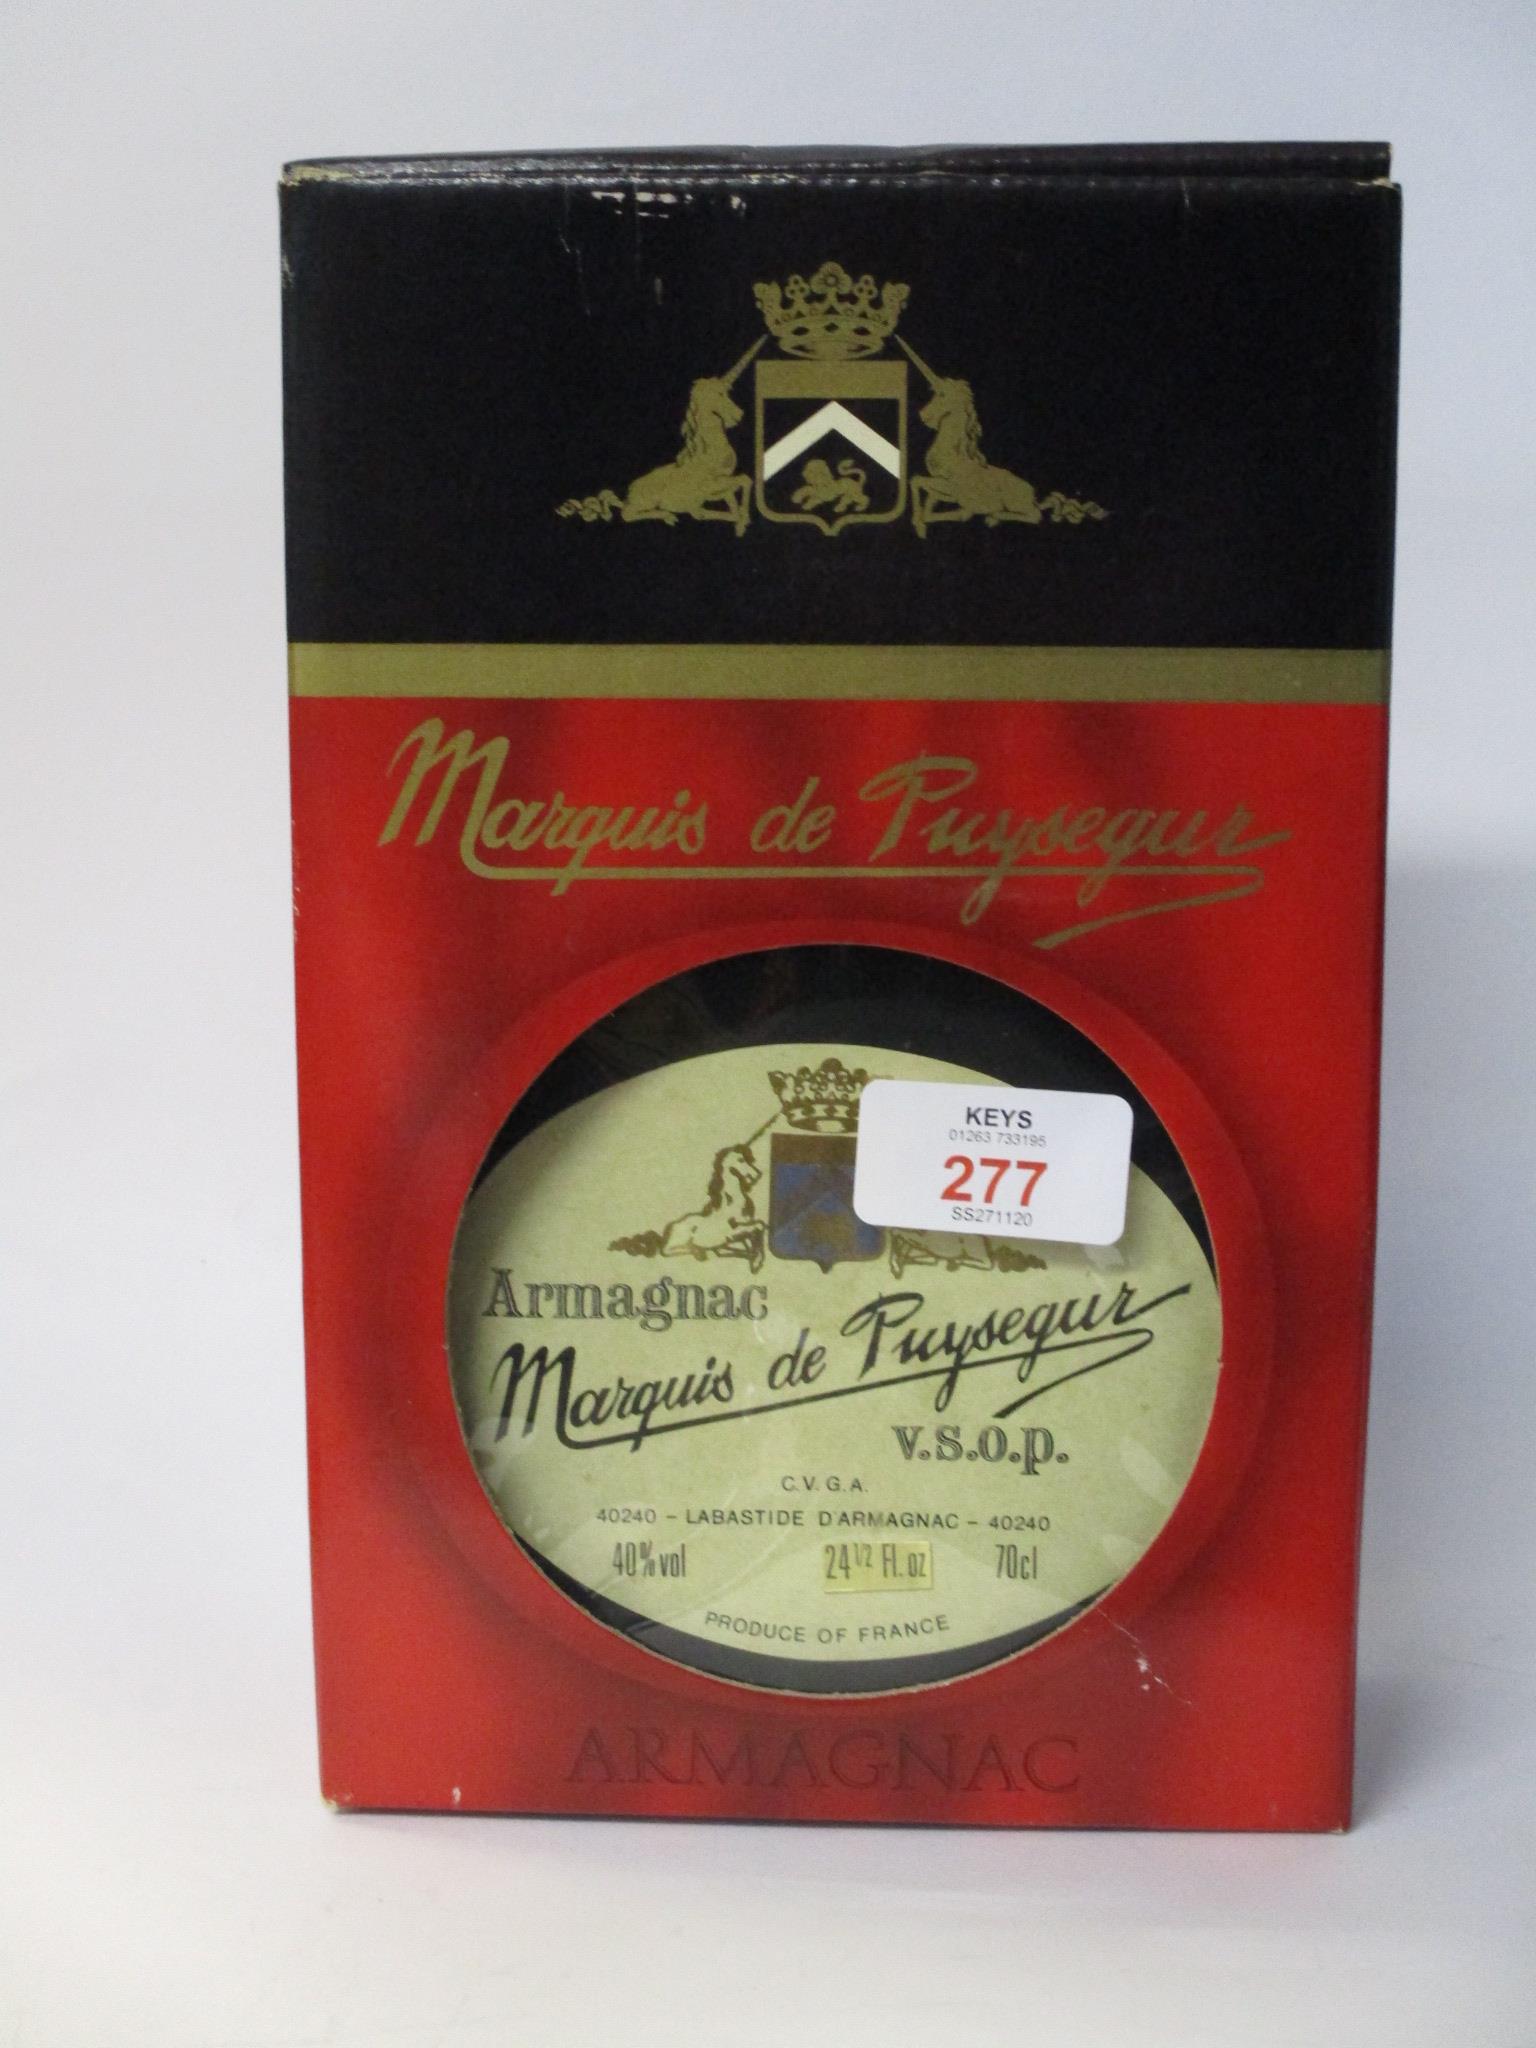 Marquis de Puysegur Armagnac - 70cl, 40% vol, in carton